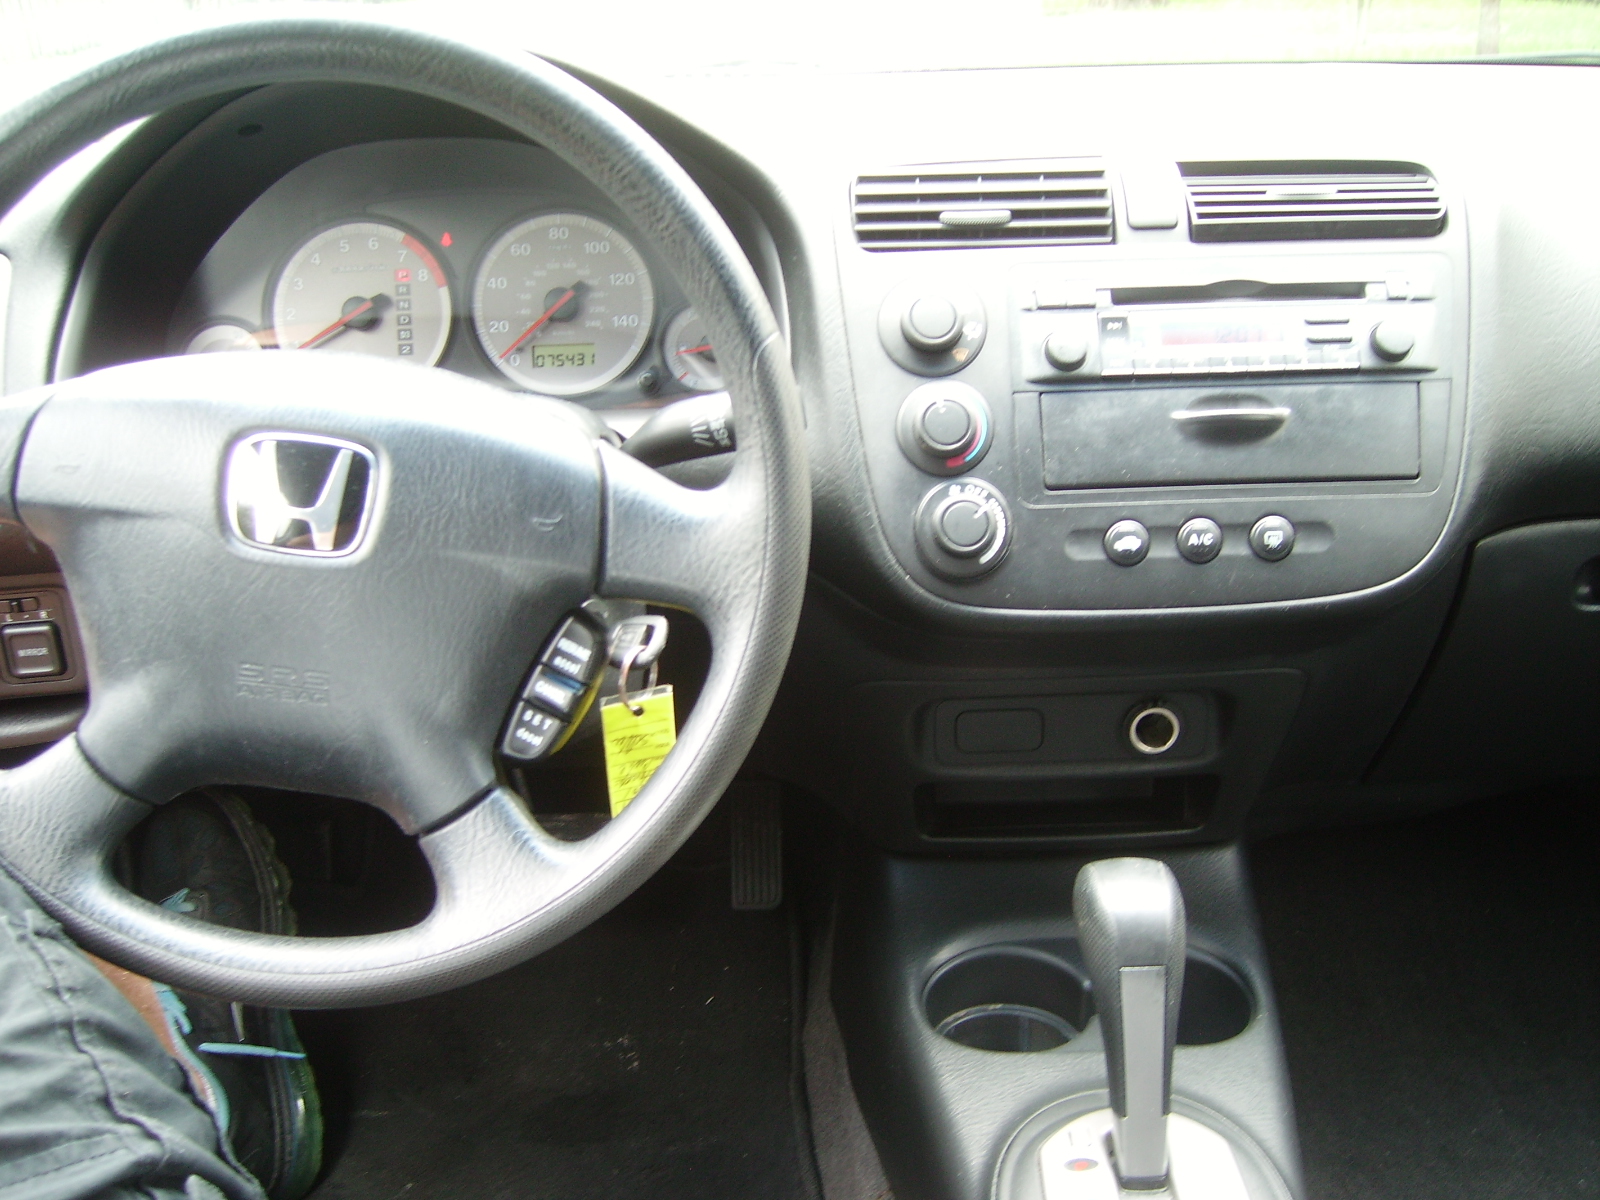 2001 Honda civic coupe ex interior #4